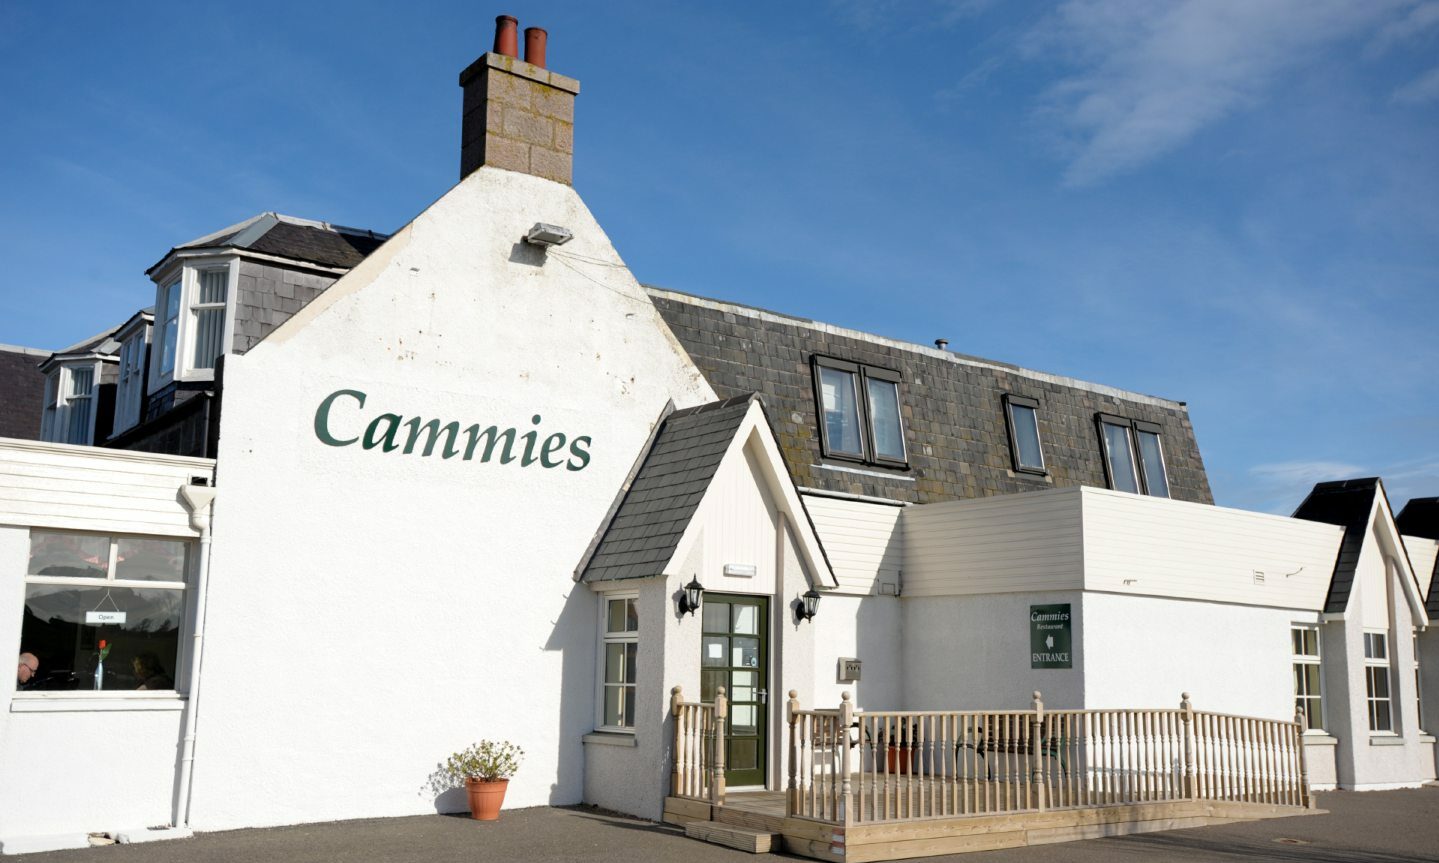 Cammies restaurant at Cammachmore, Aberdeenshire